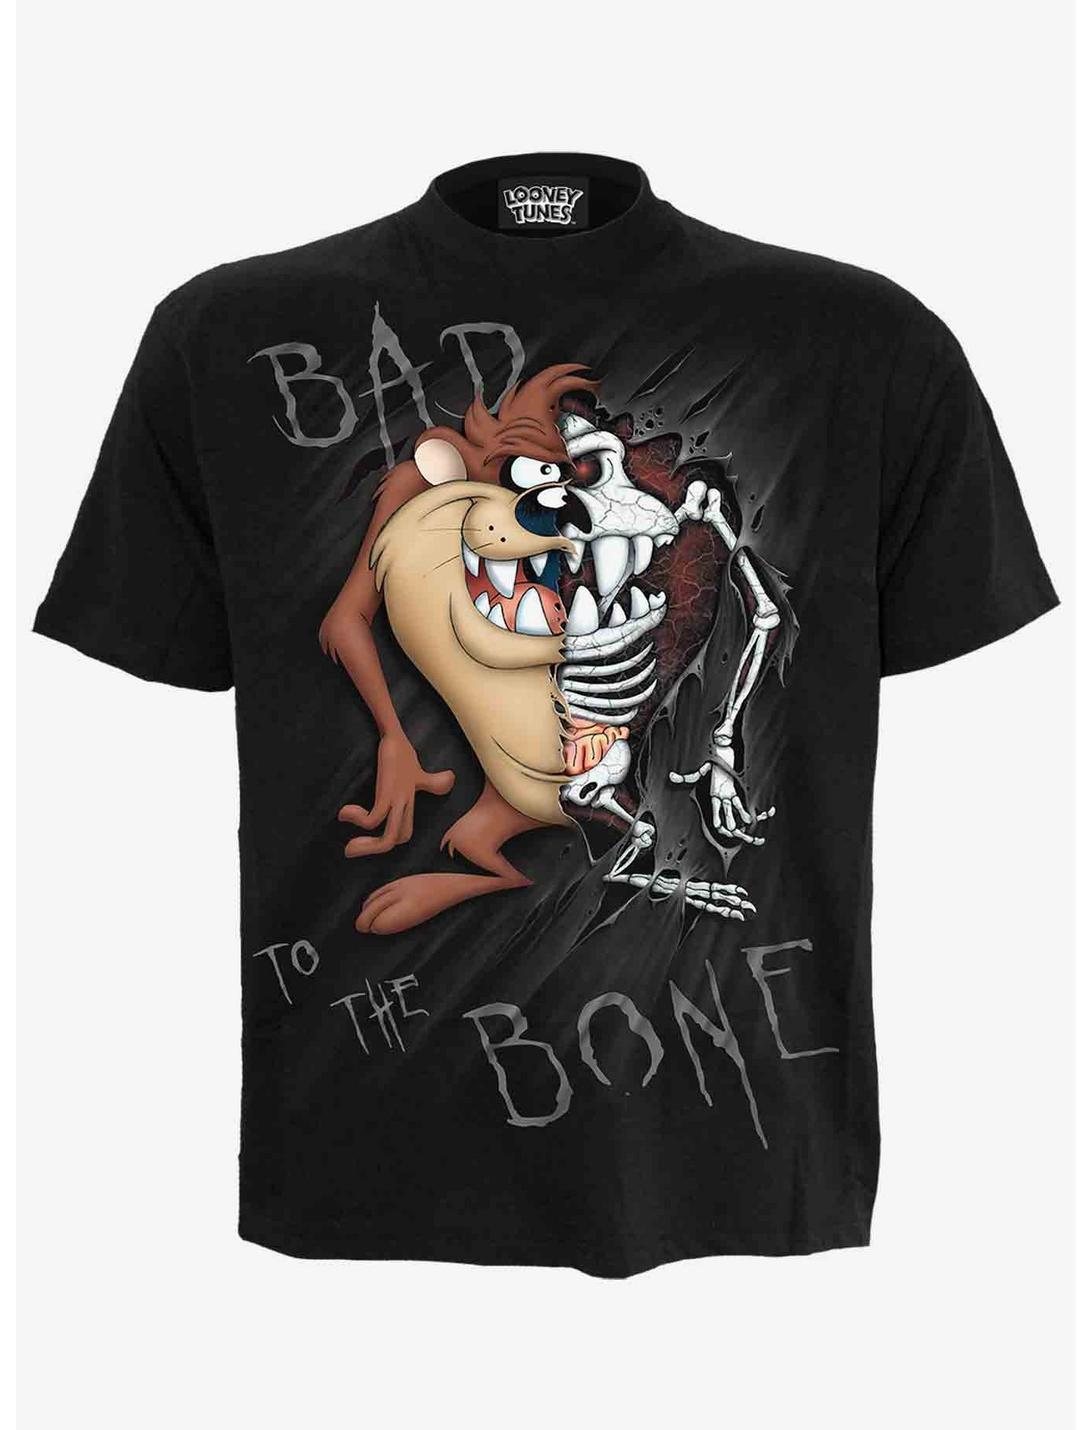 Looney Tunes Taz Bad 2 D Bone T-Shirt, BLACK, hi-res